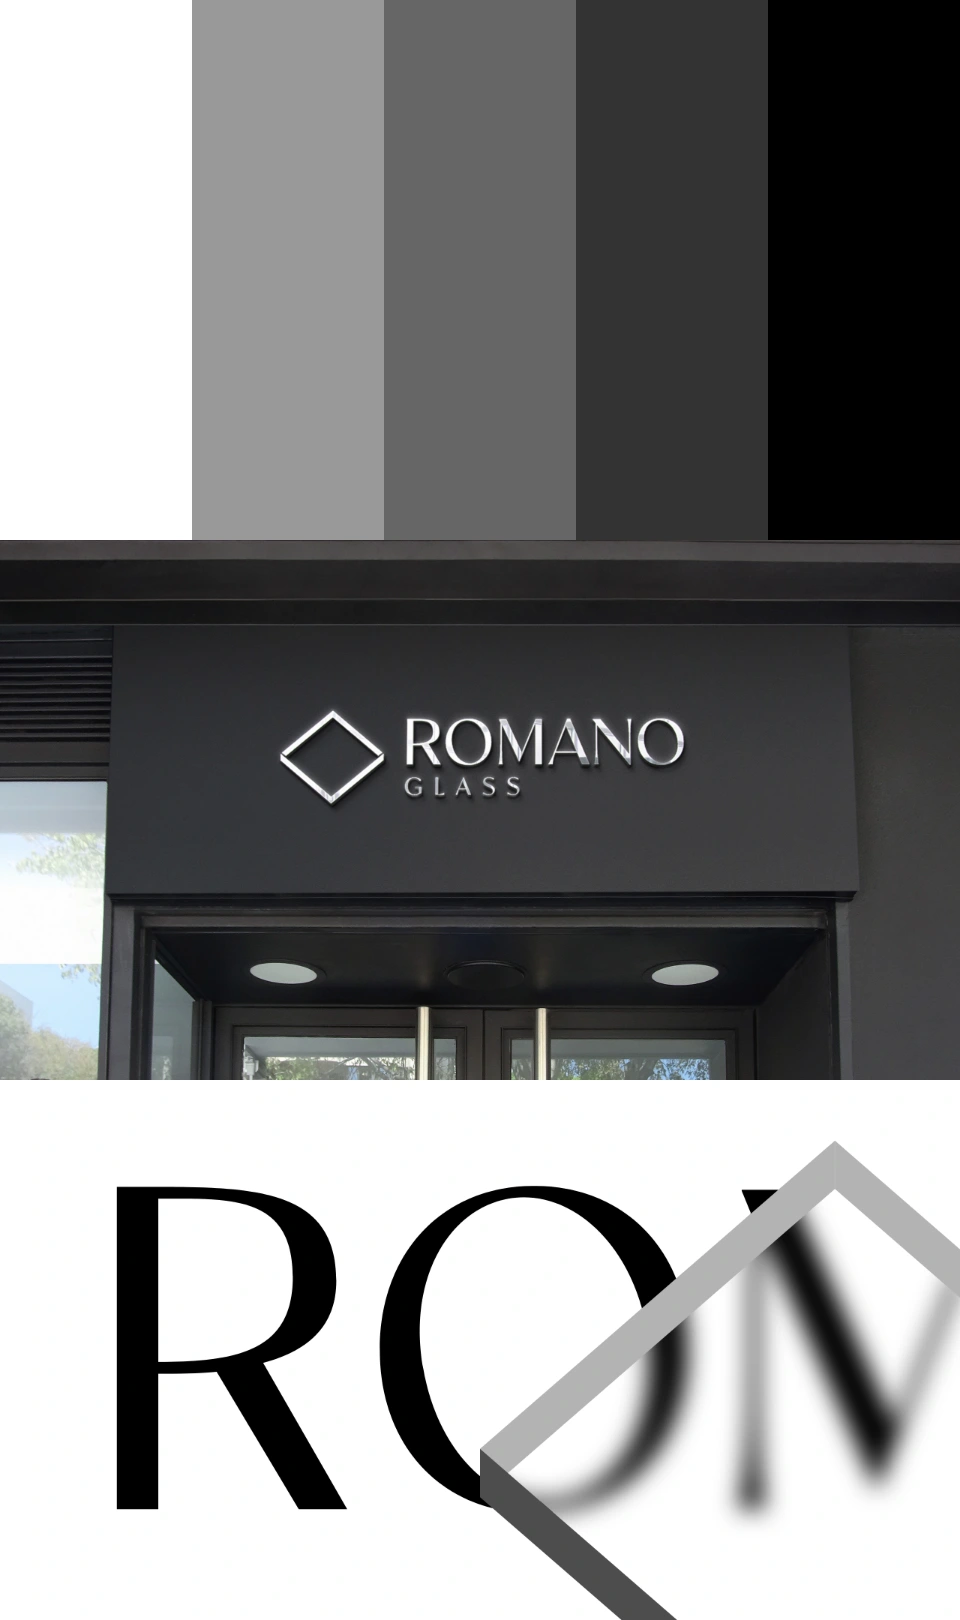 Fachada de Romano Glass con el logotipo montado sobre la entrada, demostrando la aplicación real del diseño de marca.